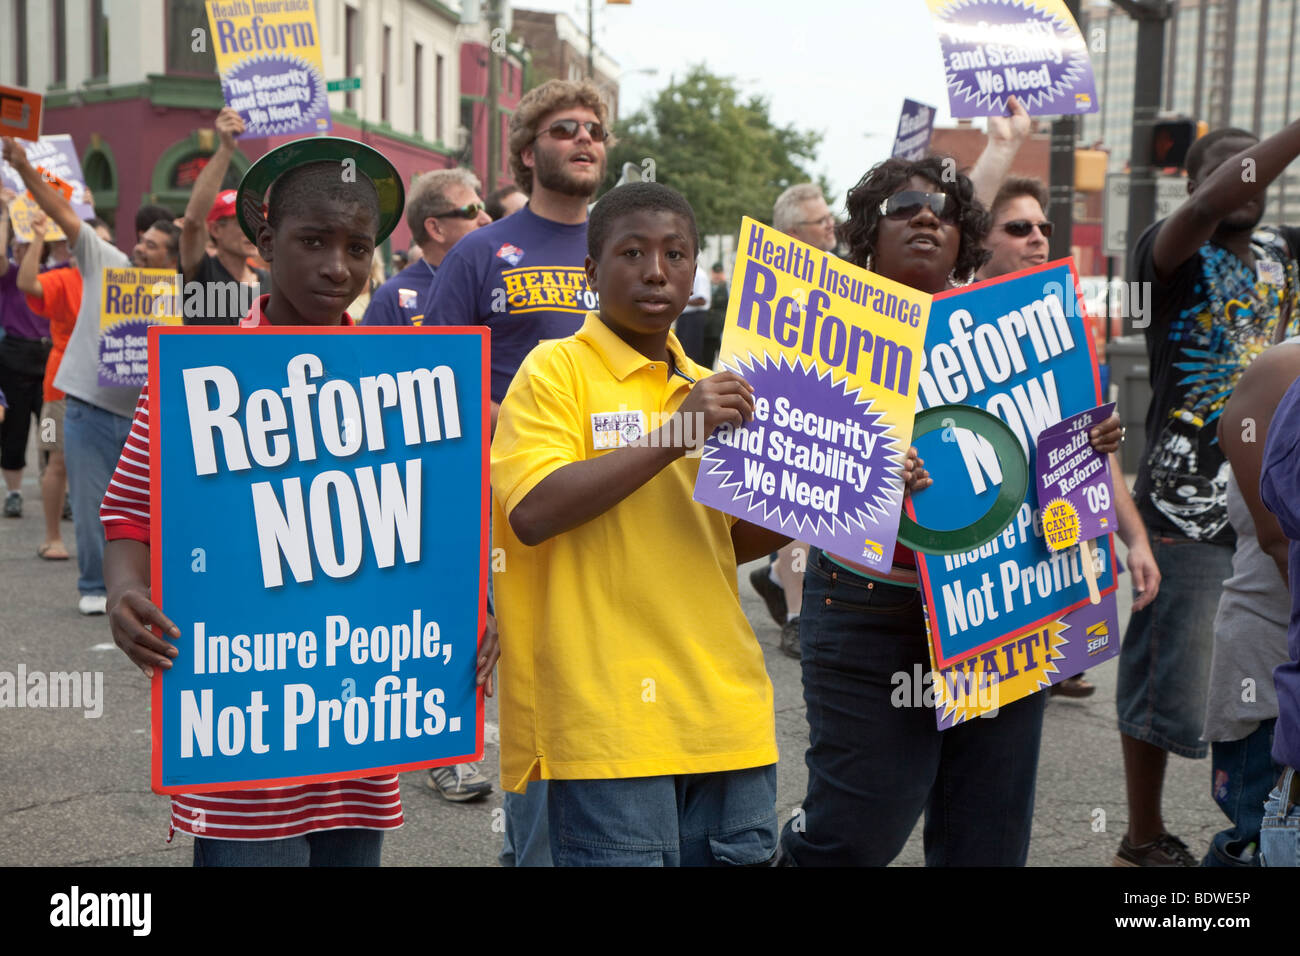 Indianapolis, Indiana - les membres de l'Union campagne pour la réforme des soins de santé au cours de la parade de la fête du Travail. Banque D'Images